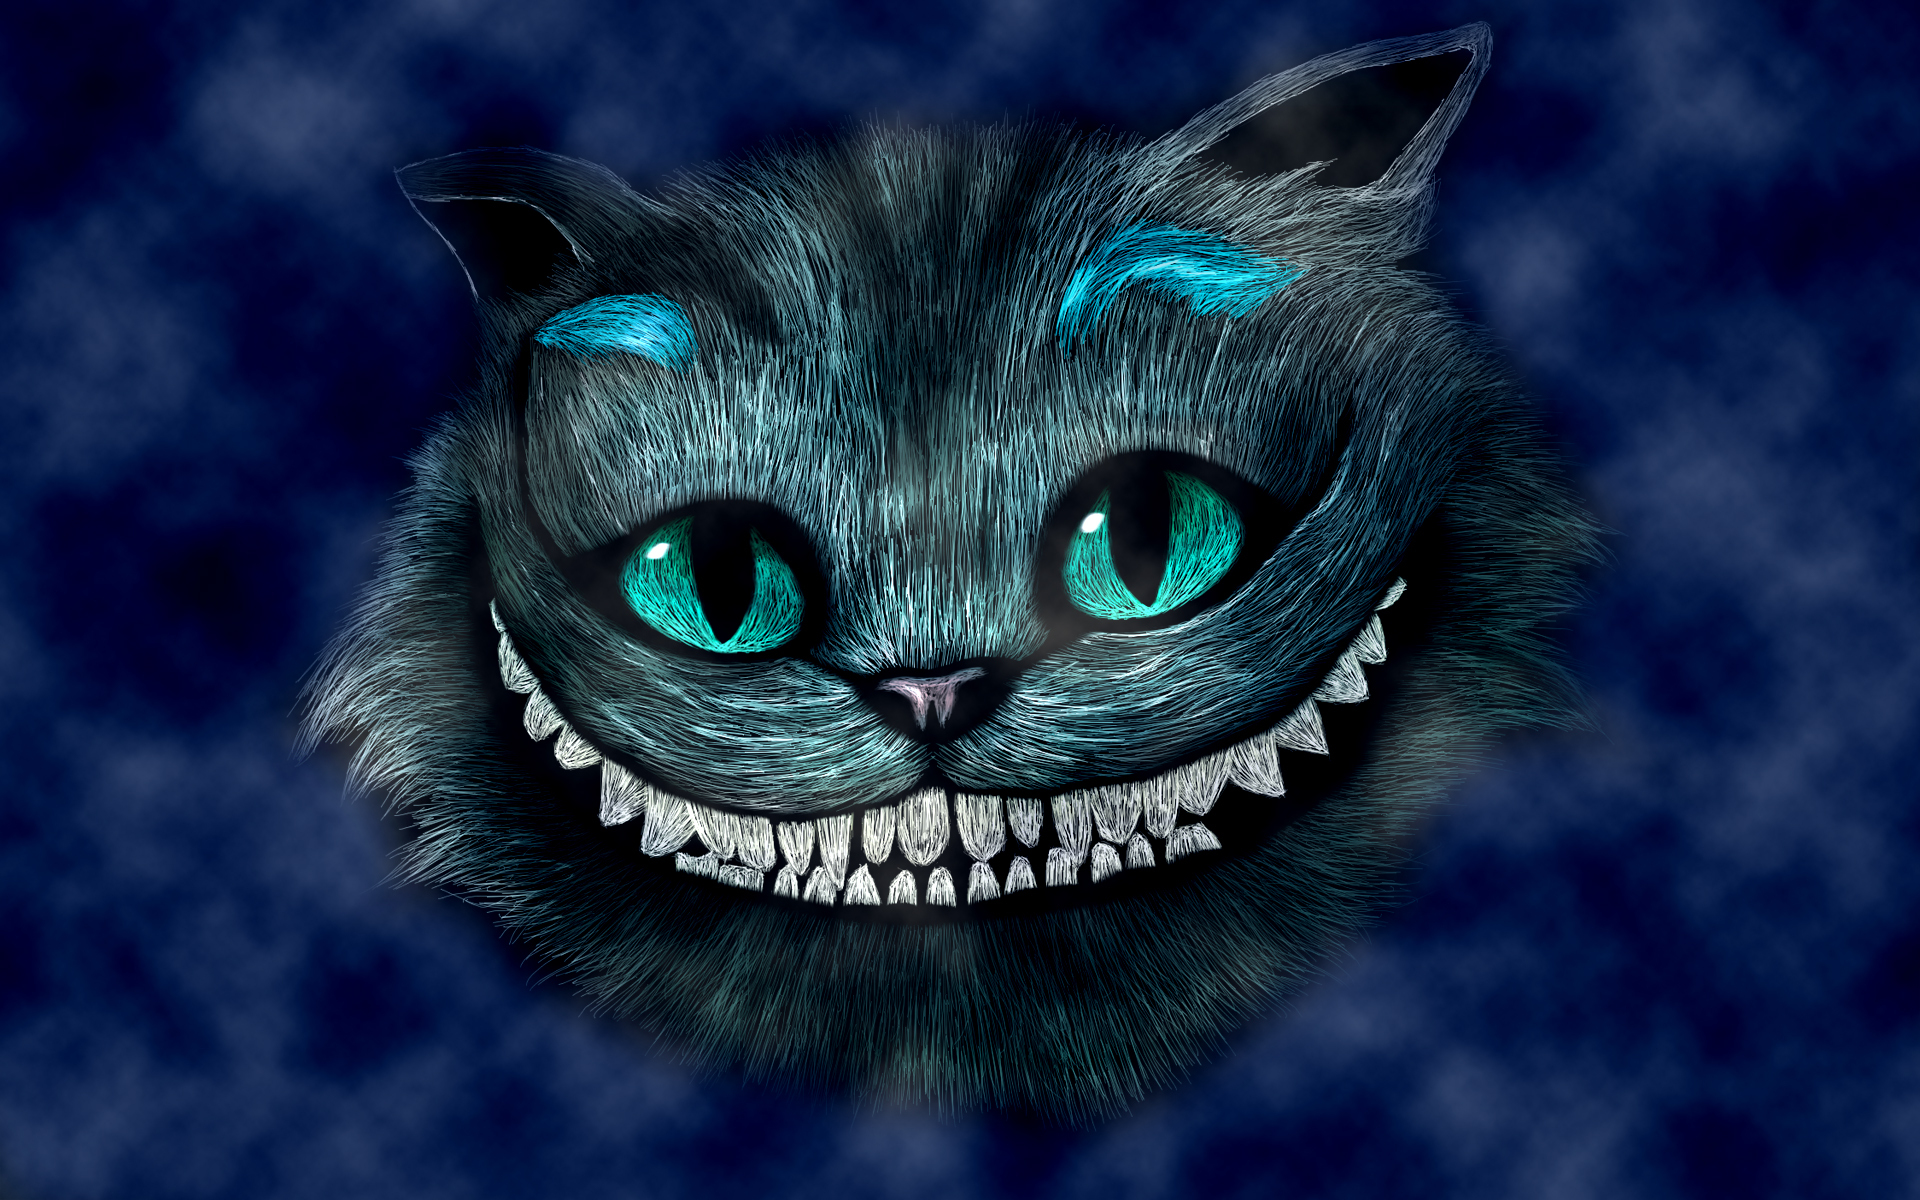 The Cheshire Cat Es Un Personaje Ficticio Creado Por Lewis Carroll En